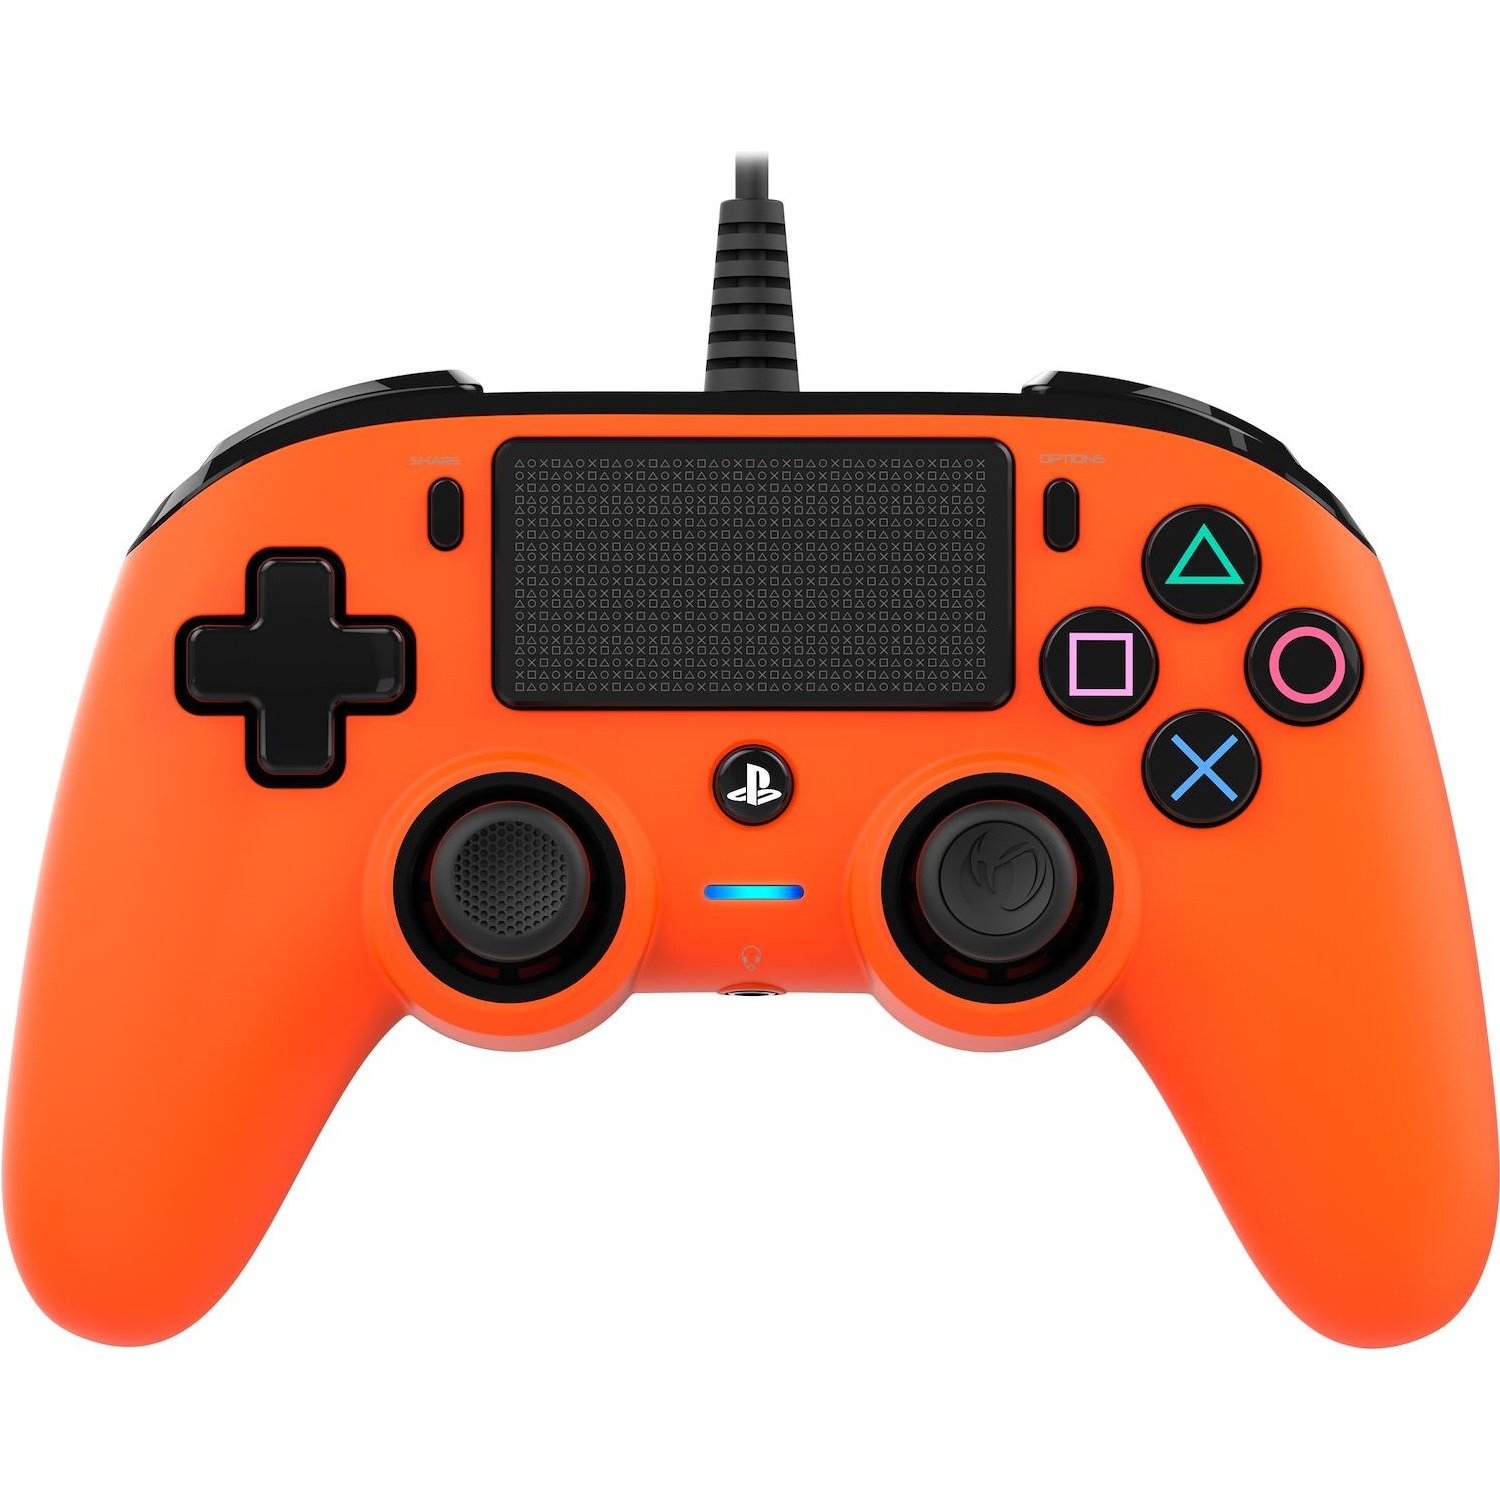 Immagine per Nacon PS4 Pad compact orange wired da DIMOStore